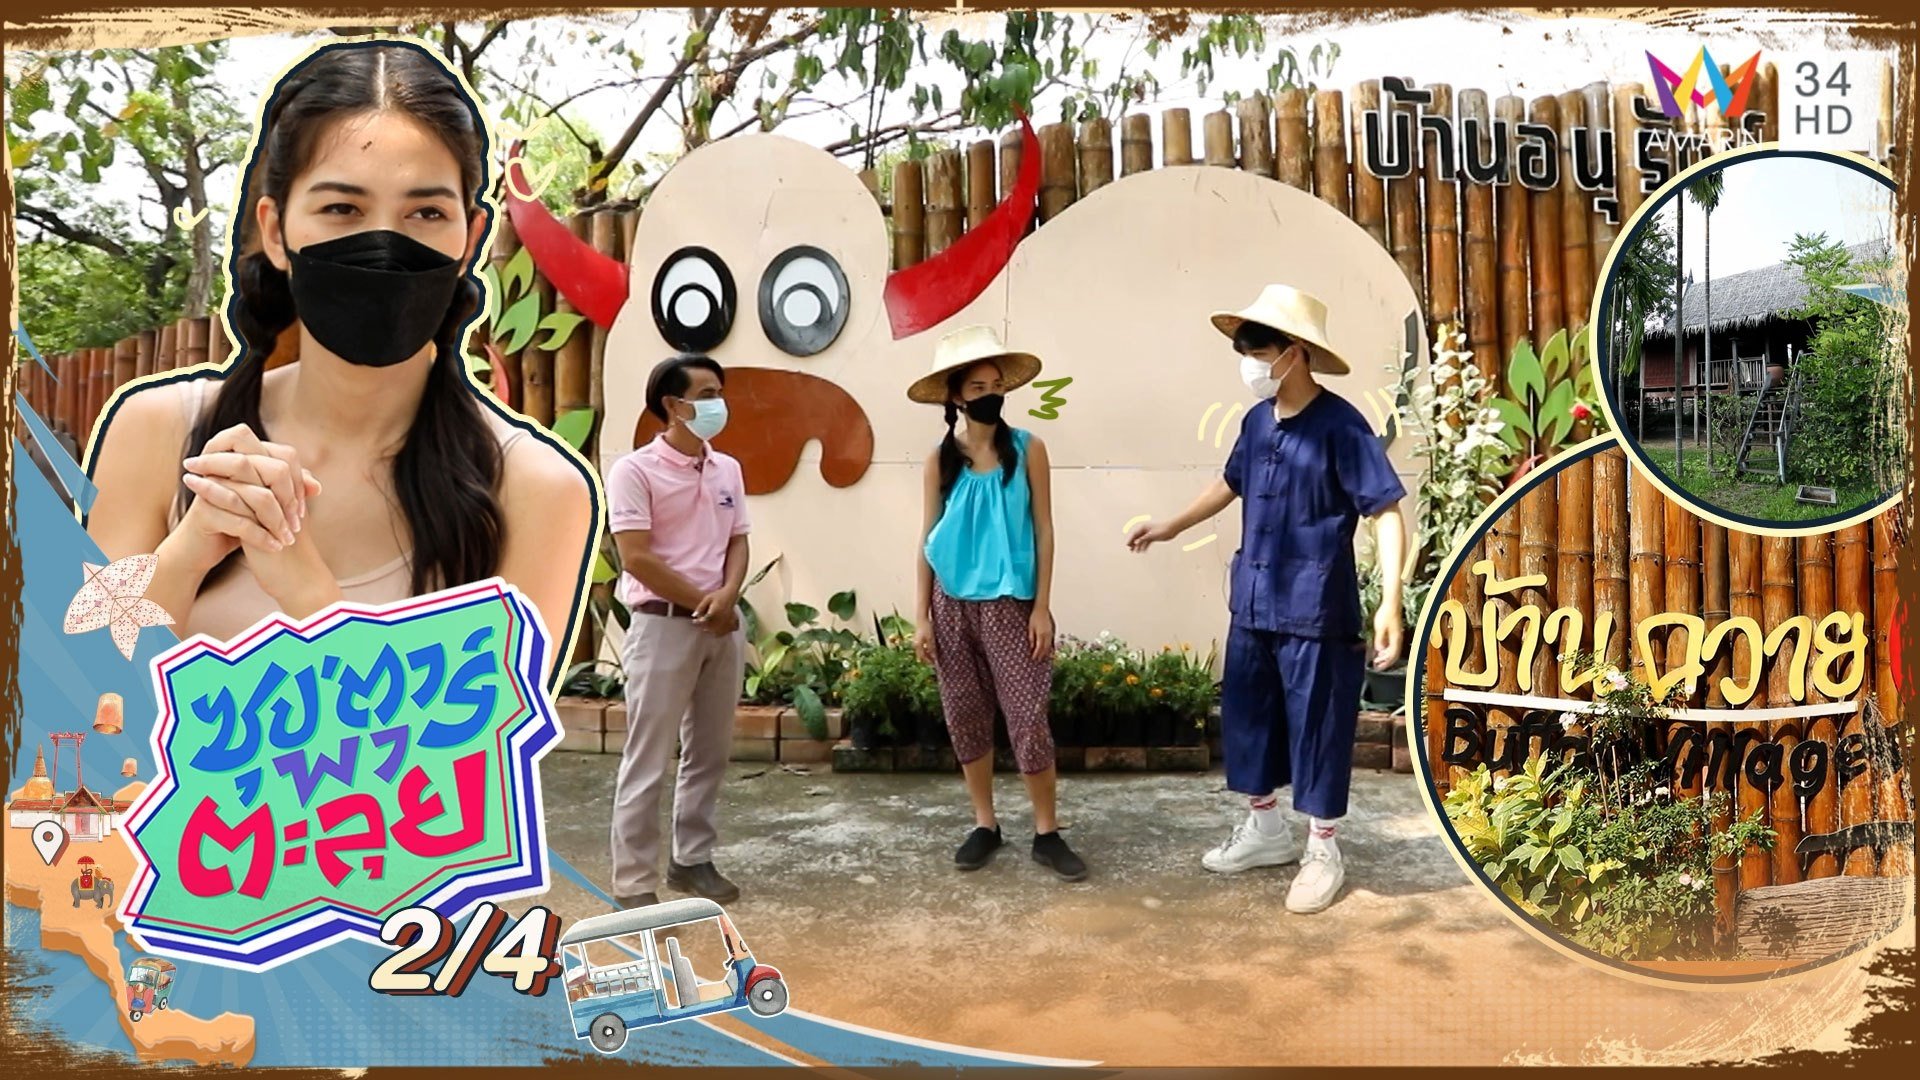 ติช่า พาตะลุยเที่ยวบ้านอนุรักษ์ควายไทย | ซุปตาร์พาตะลุย | 10 ก.พ. 65 (2/4) | AMARIN TVHD34